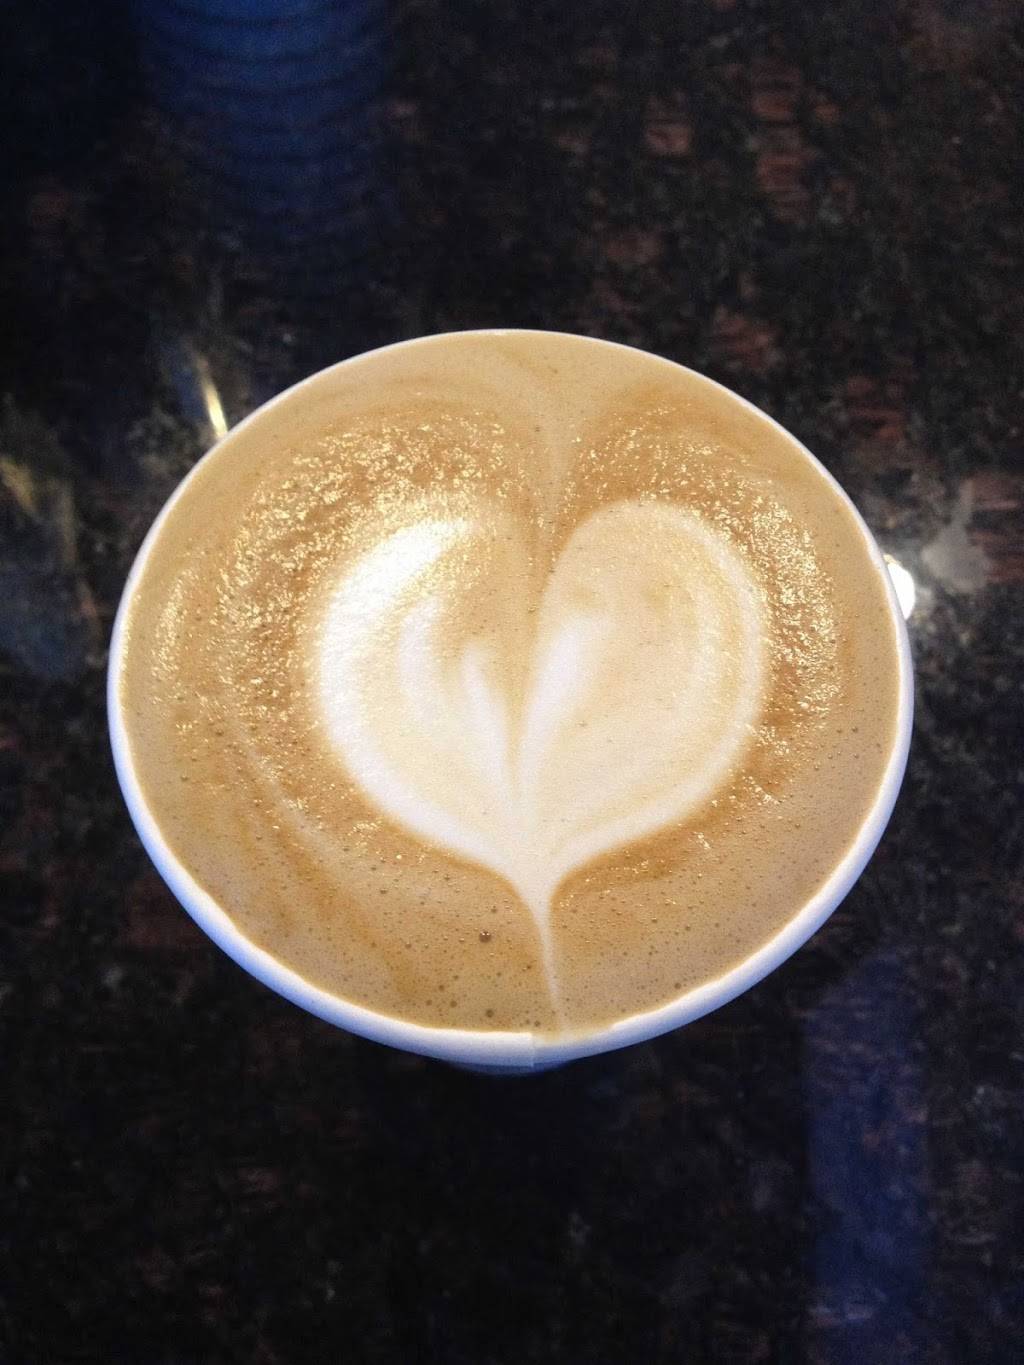 The Daily Brew Coffee Bar | cafe | 137 N Montebello Blvd, Montebello, CA 90640, USA | 3238884201 OR +1 323-888-4201